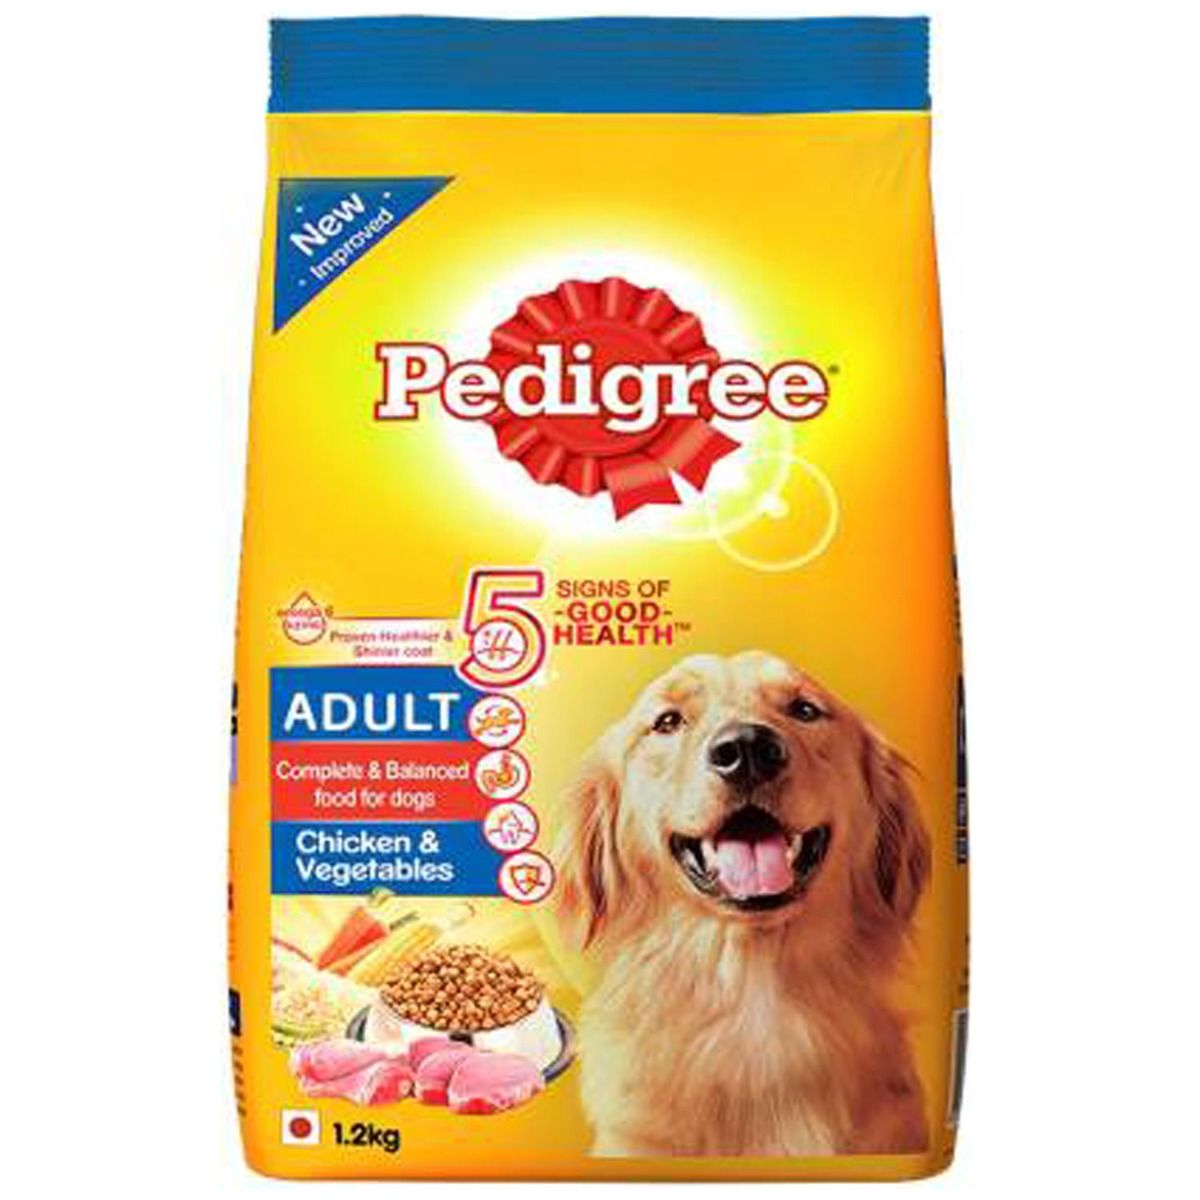 Buy Pedigree Adult Dog Food With Chiken & Vegetables, 1.2 kg Online